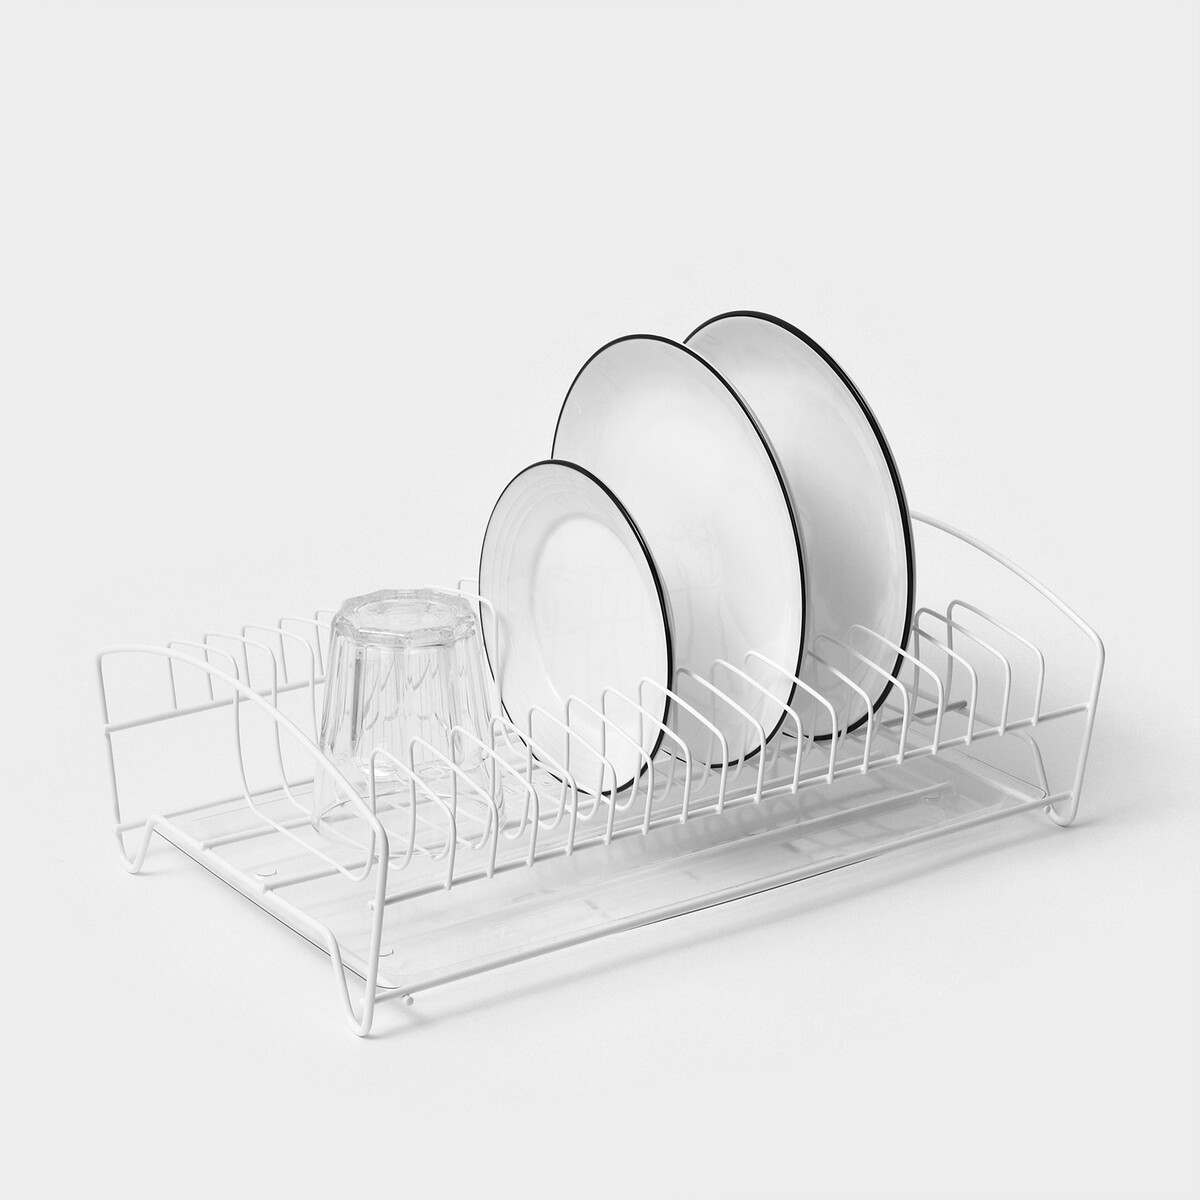 Сушилка для посуды с поддоном, 39×25×12 см, цвет белый сушилка для посуды umbra sinkin чёрный